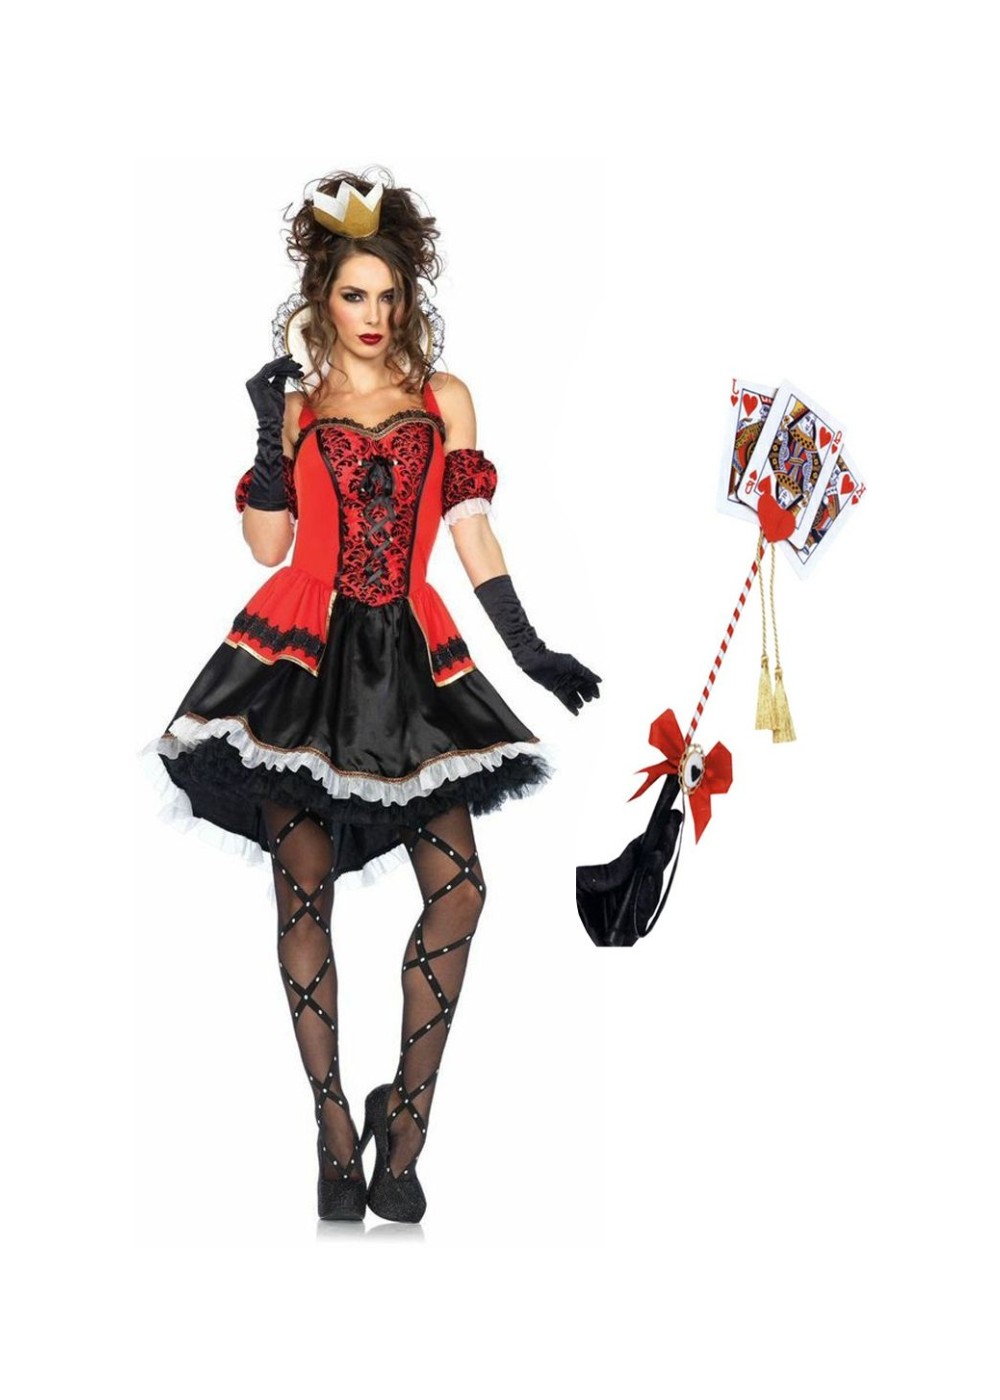 3D Printed Queen Of Hearts (Red Queen) Cosplay Costume accessories –  3DPrintProps